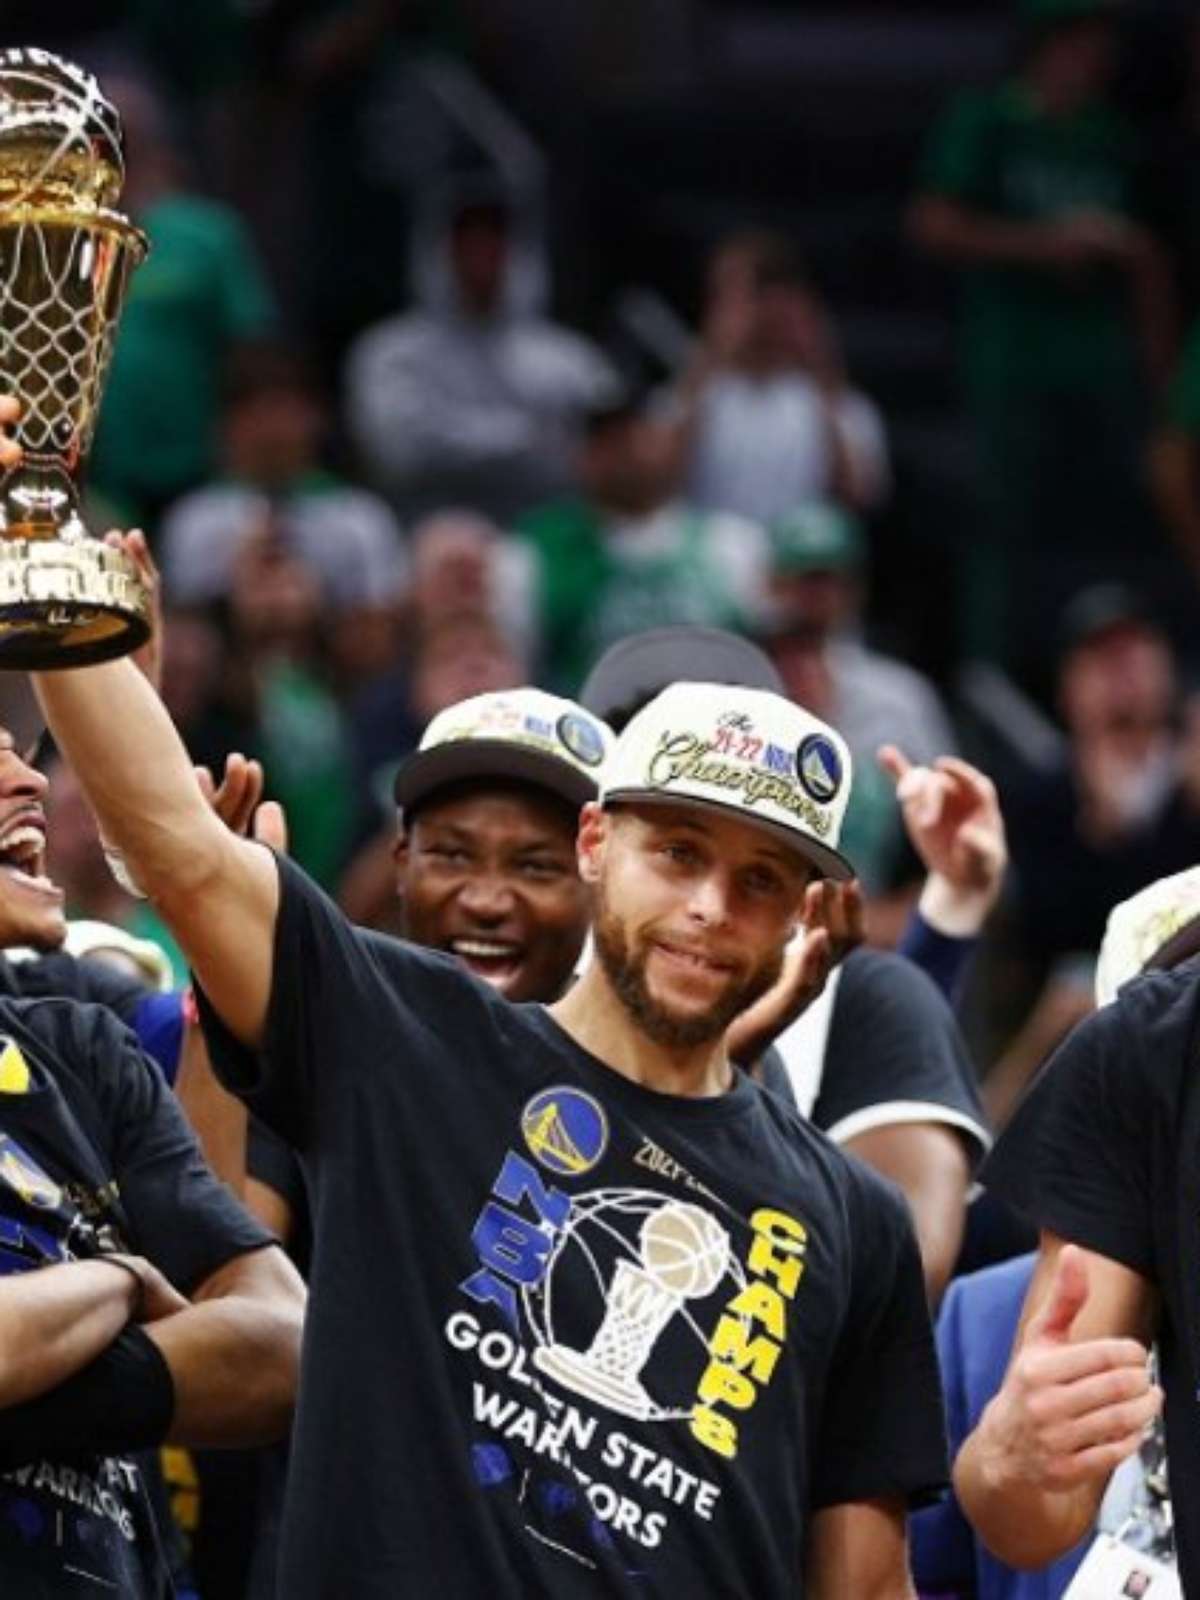 Curry é eleito MVP da NBA e 1º ganhador do prêmio por unanimidade